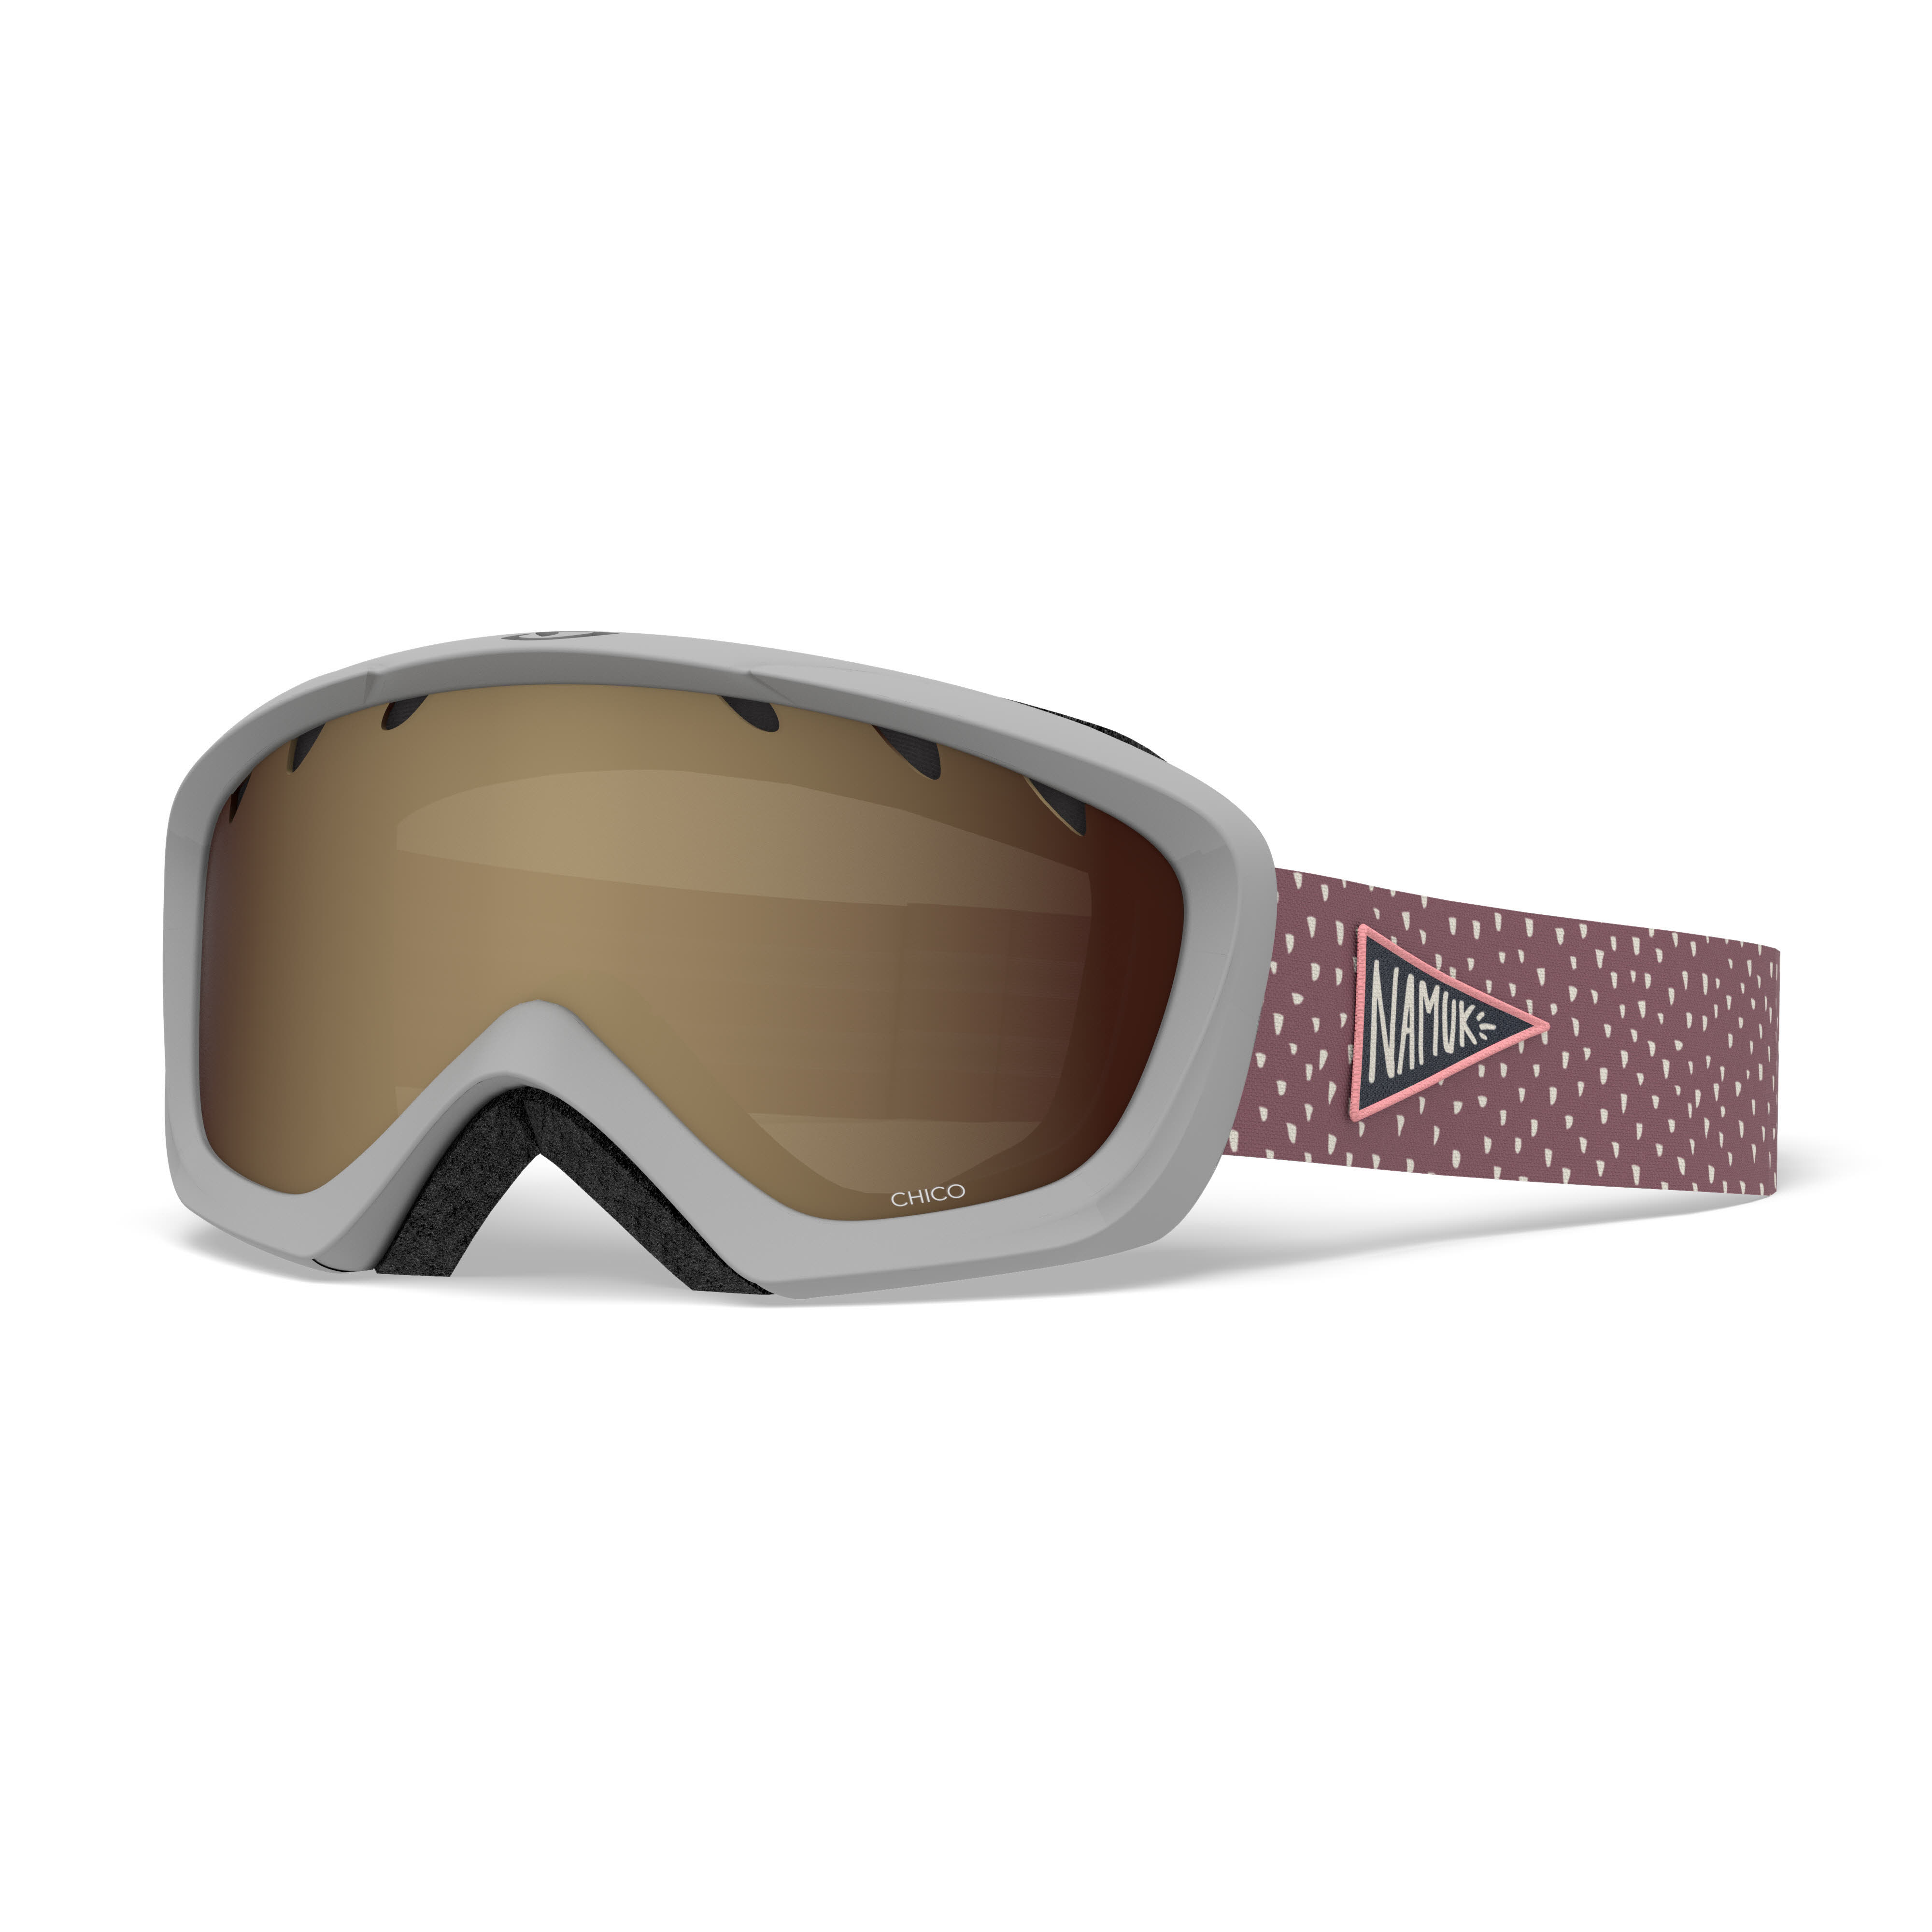 Giro Snow Chico Goggle Mädchen Skibrille Snowboardbrille pink